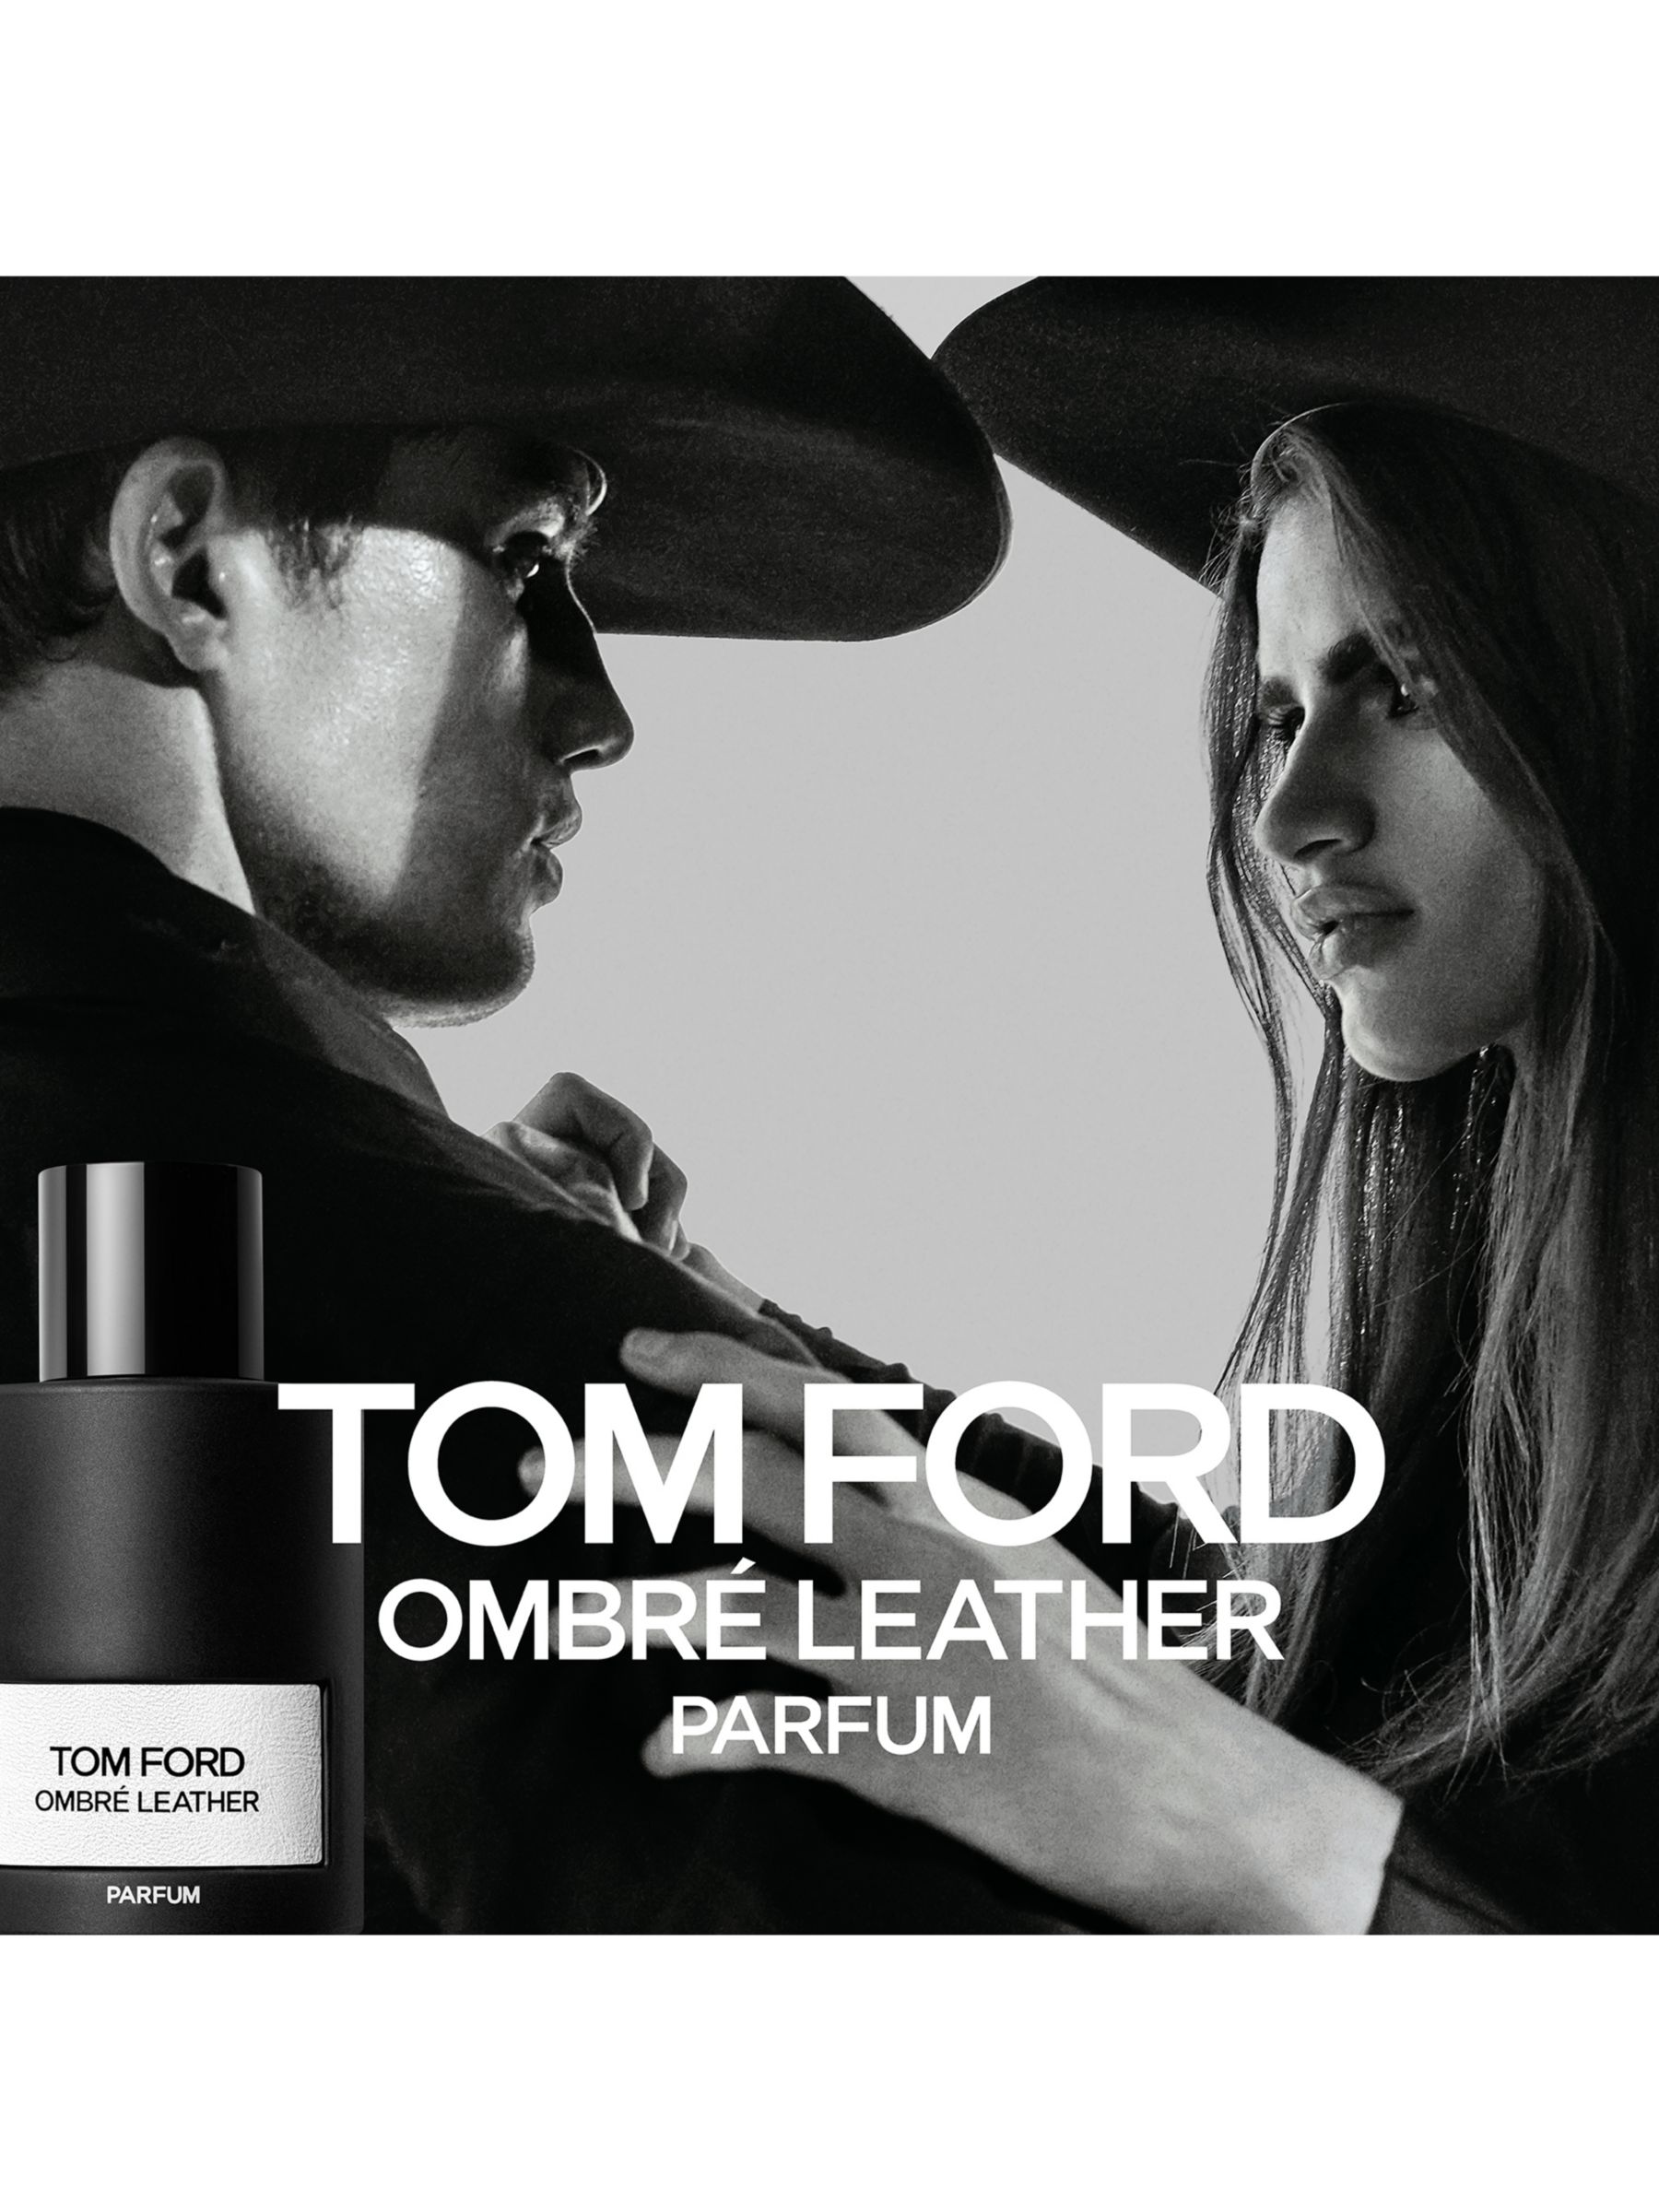 TOM FORD Ombré Leather Parfum Travel Spray, 10ml